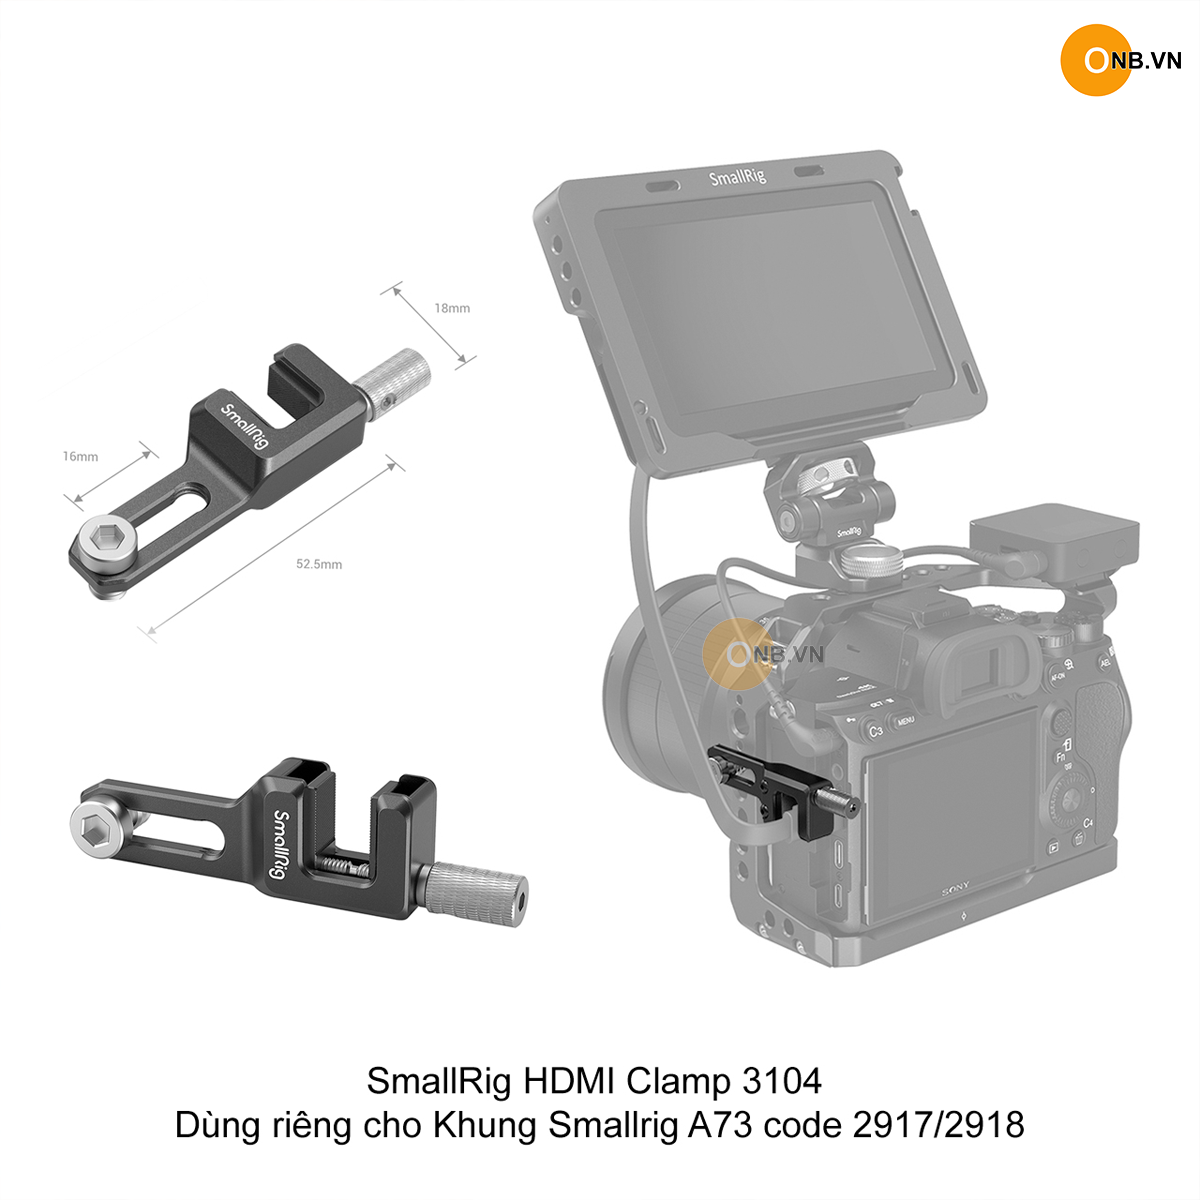 SmallRig HDMI Clamp 3104 dùng riêng Khung A73 - 2917/2918